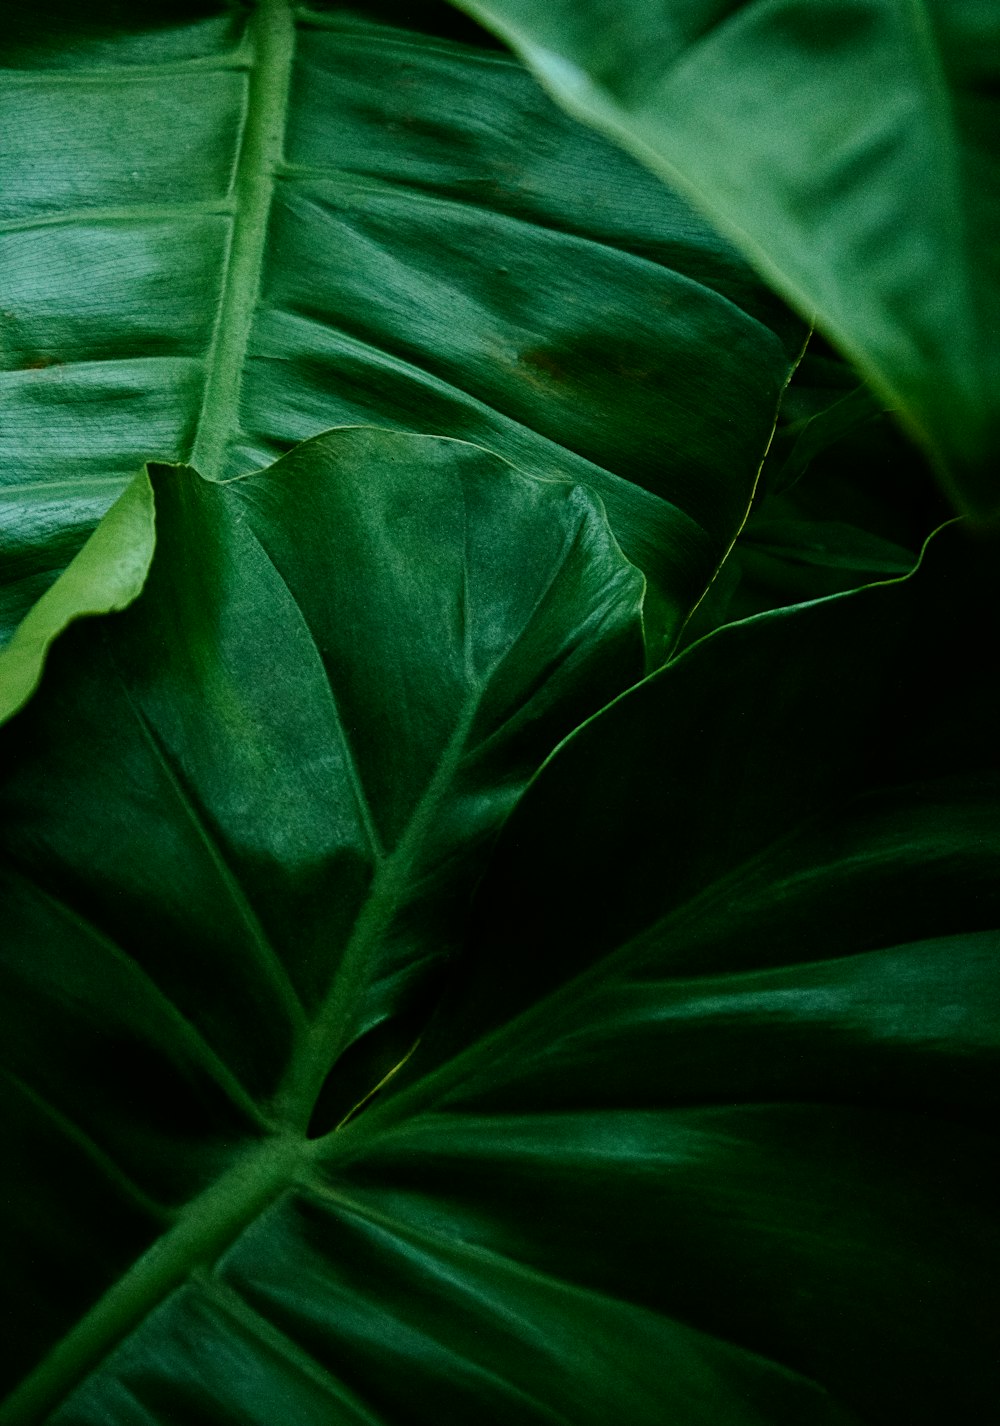 planta de hoja verde en fotografía de primer plano